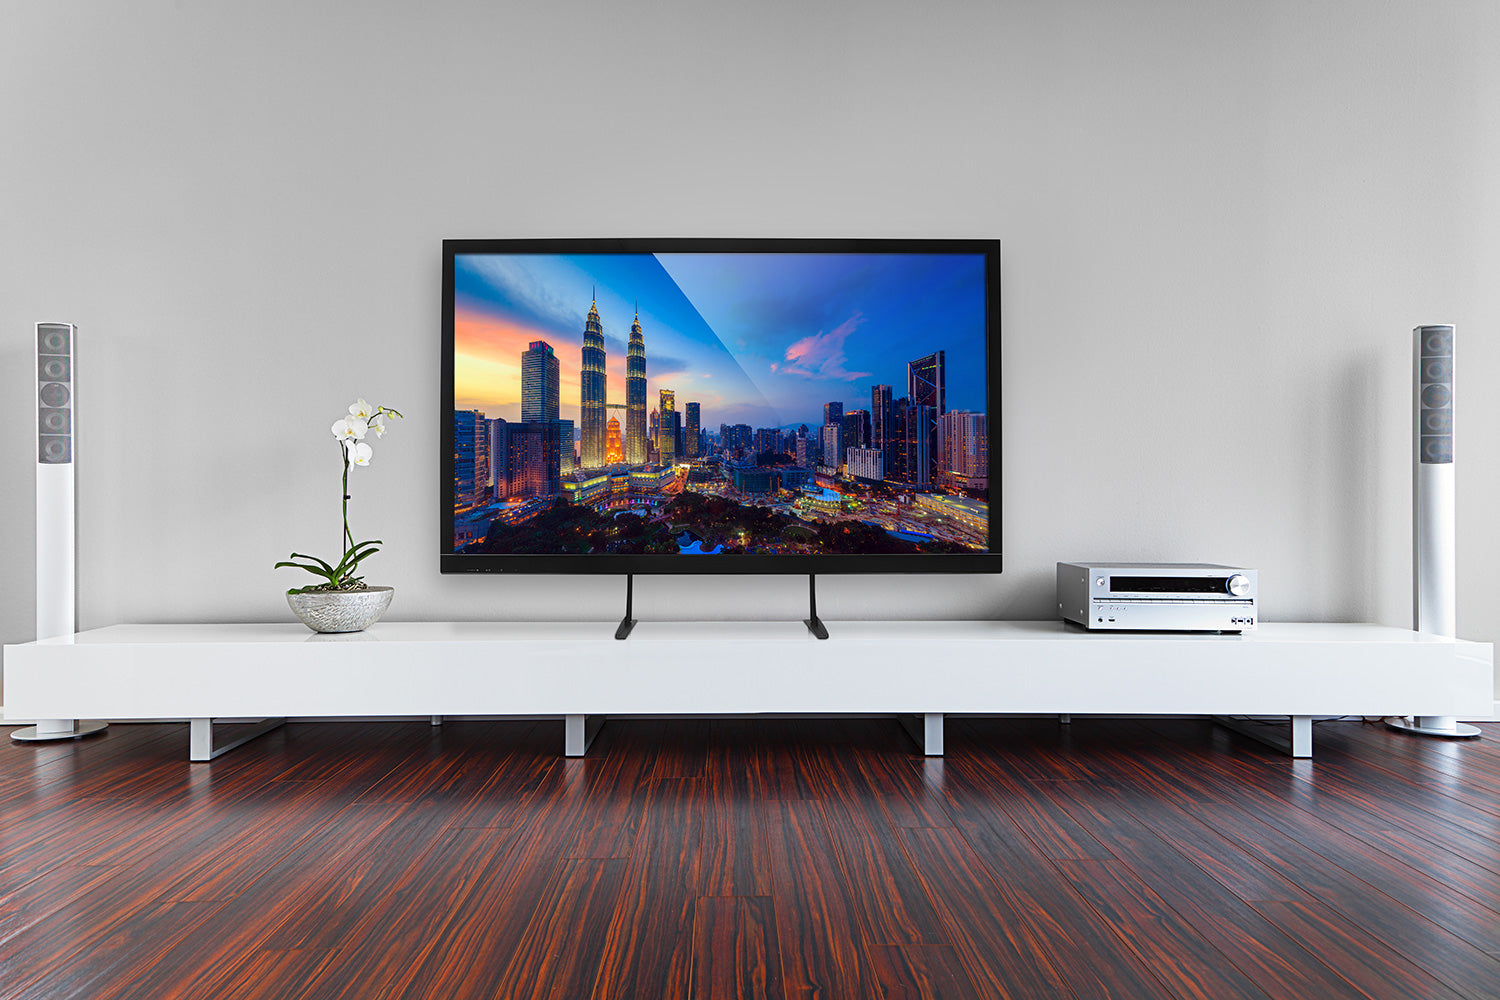 50 Vs 55 Inch TV: Size Comparison (2023)